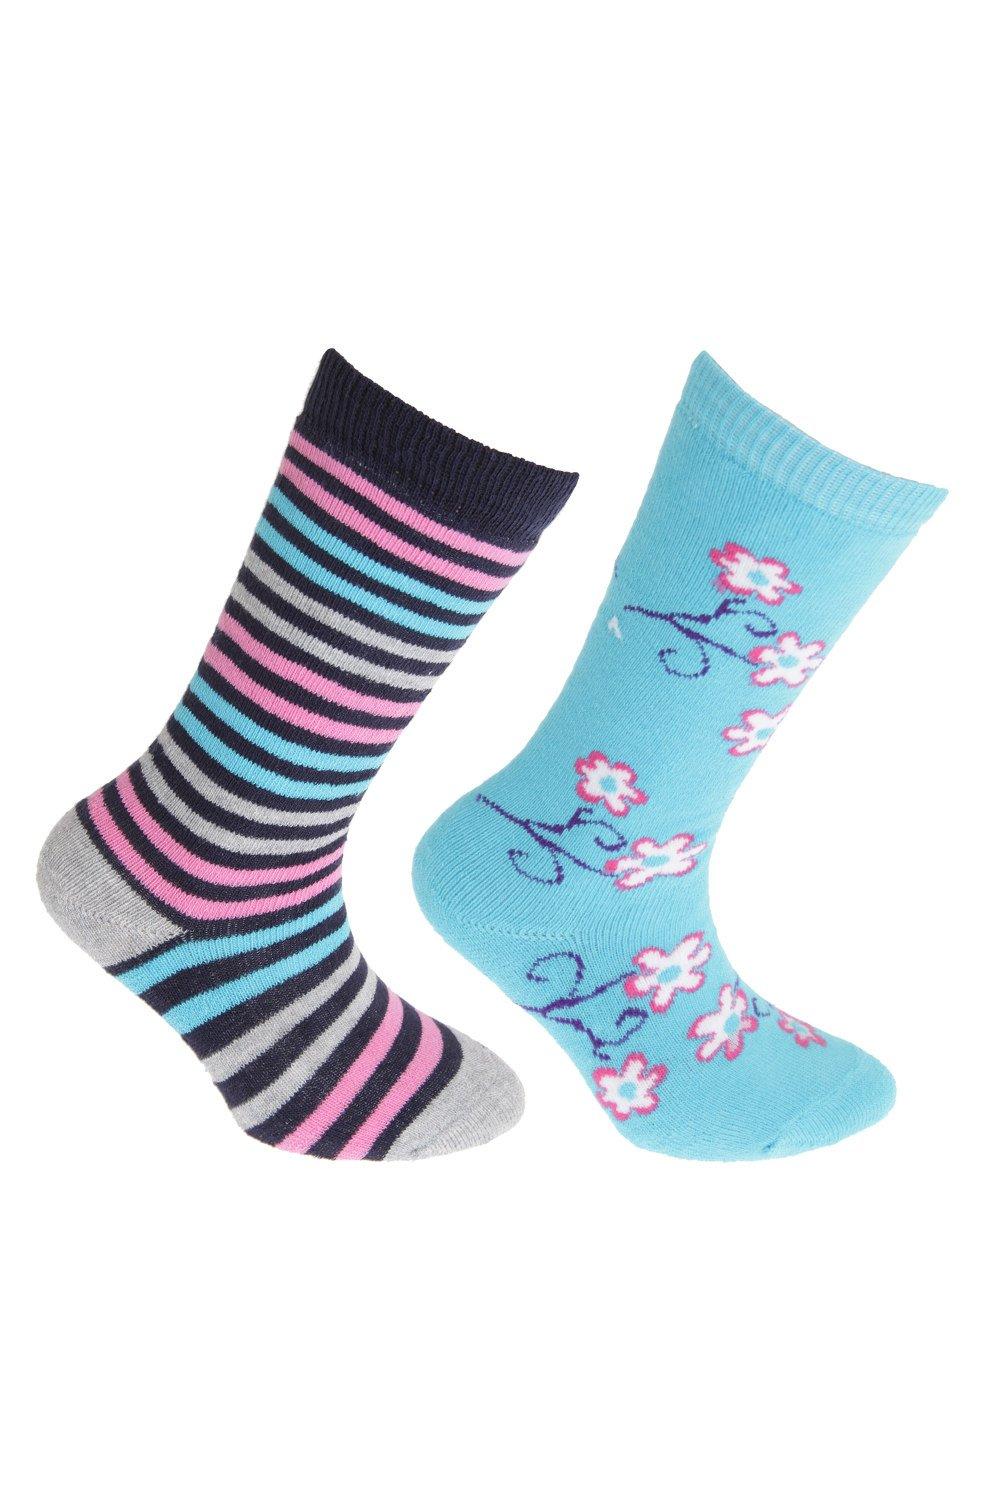 Резиновые носки с высоким содержанием хлопка (2 пары) Floso, синий носки artie комплект из 2 пар размер 13 14 красный синий